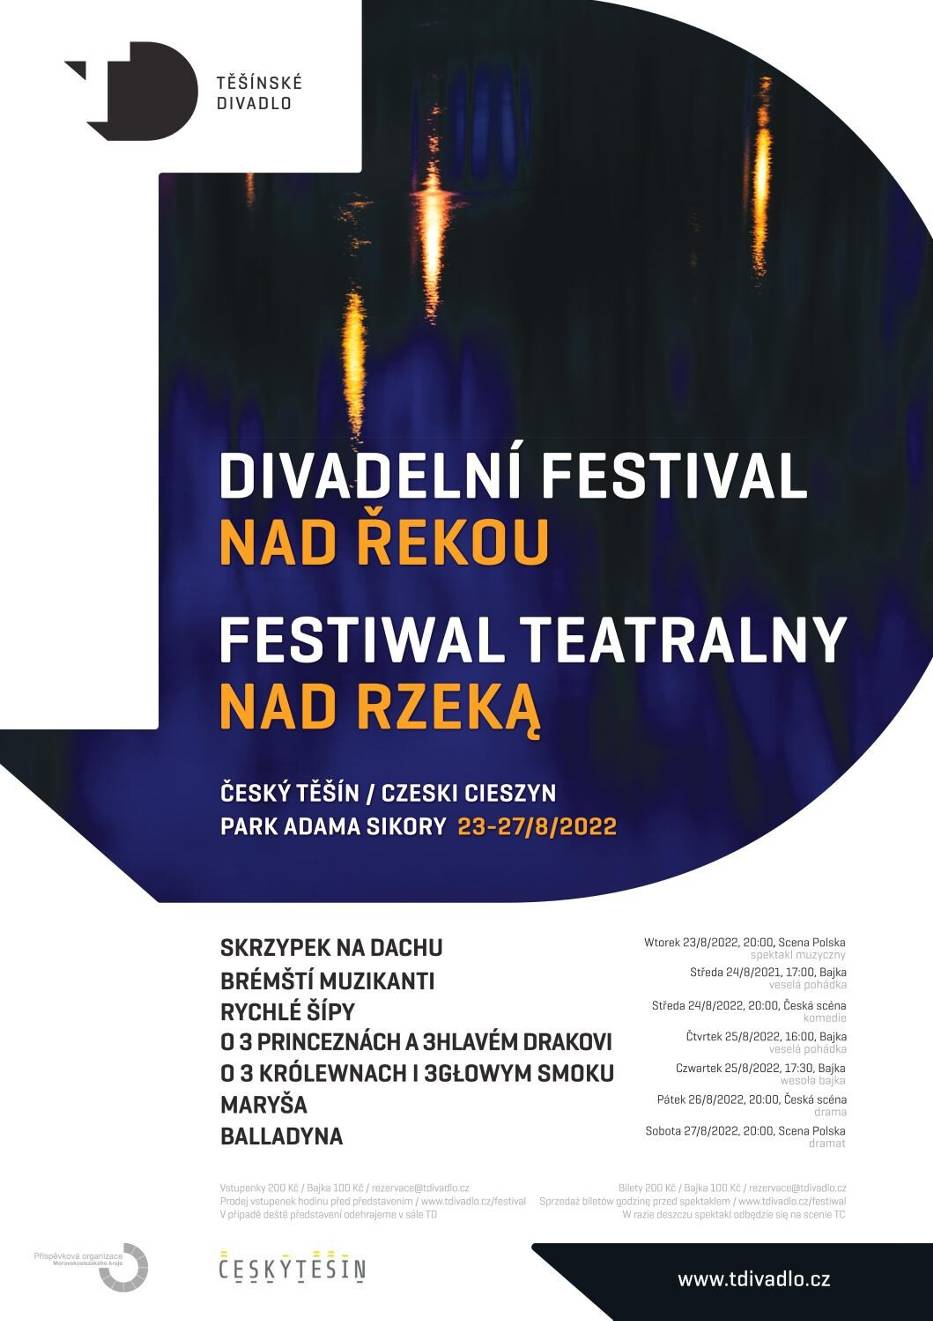 Festiwal Teatralny Nad Rzeką 2022 - program